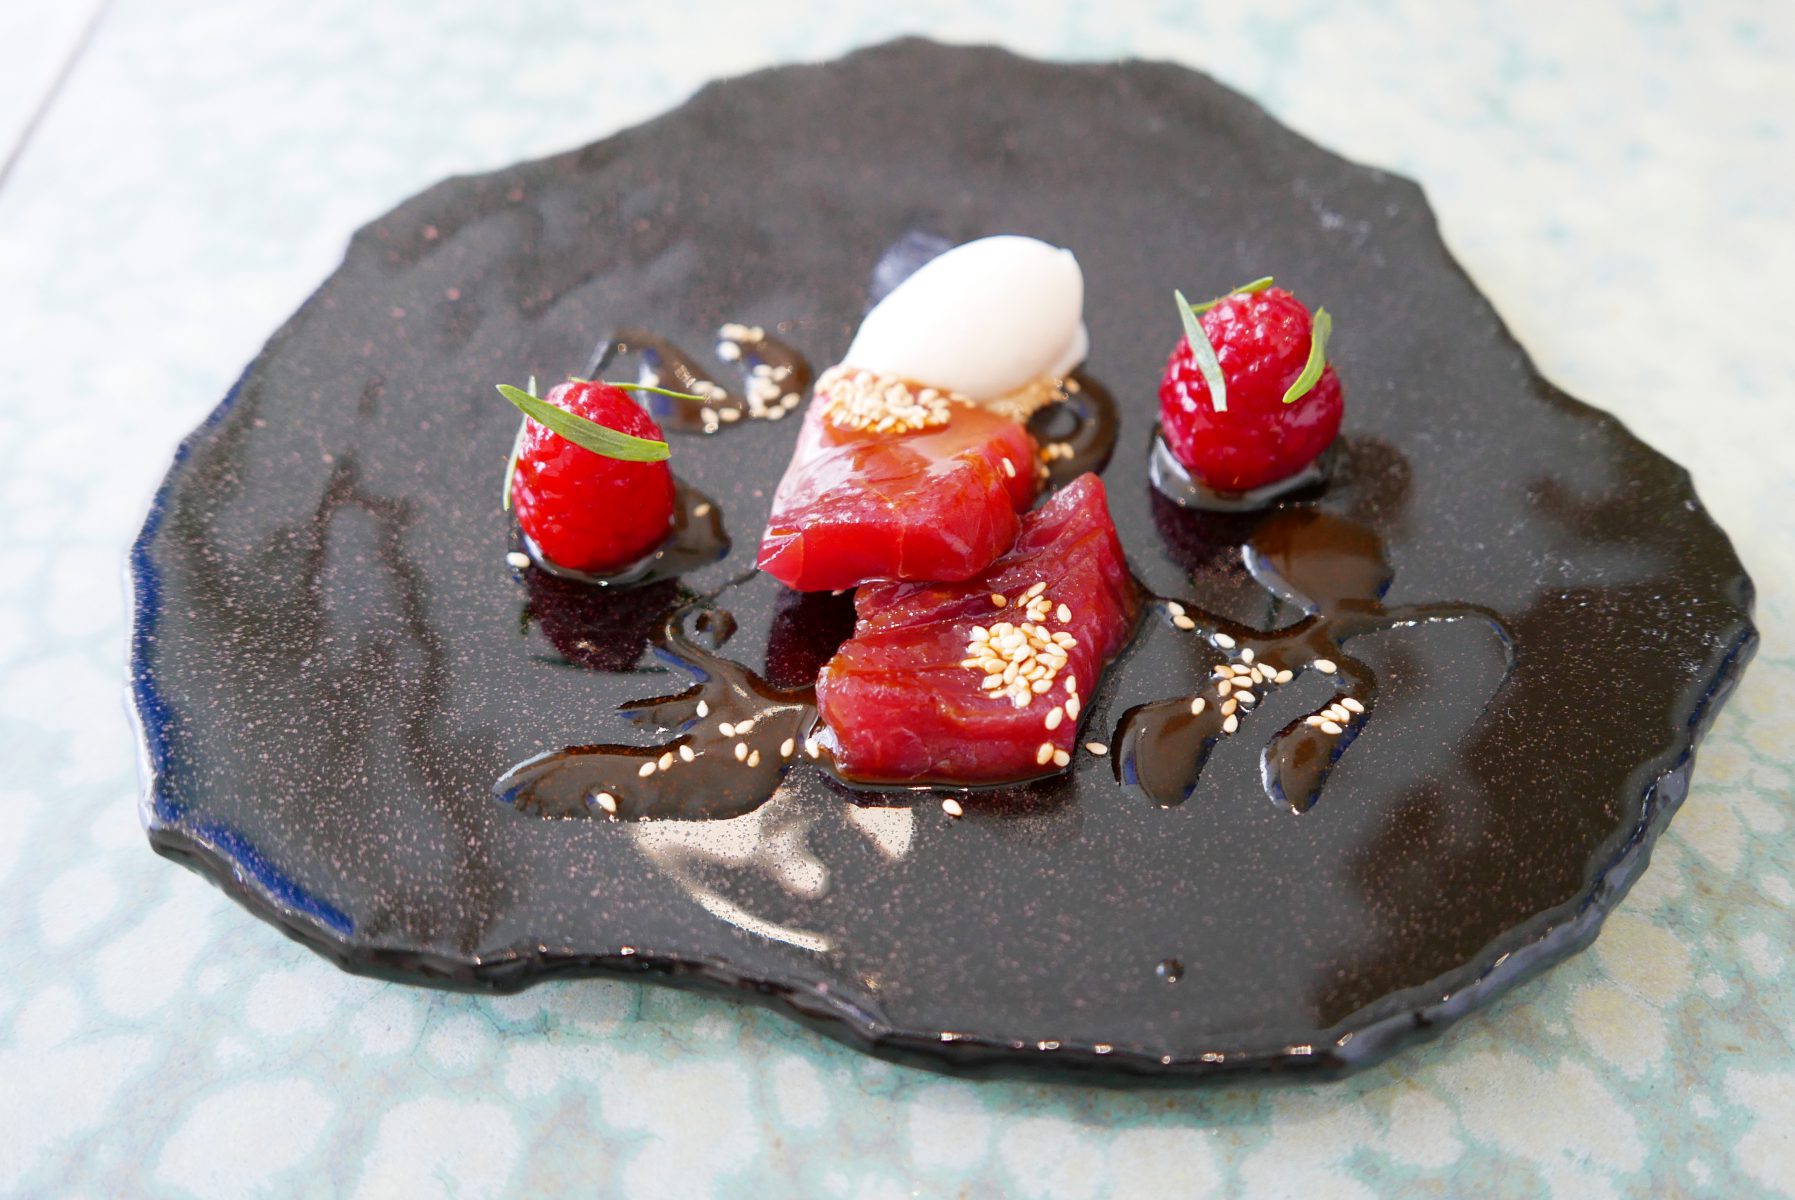 Tuna with marinated raspberries and sake-kasu